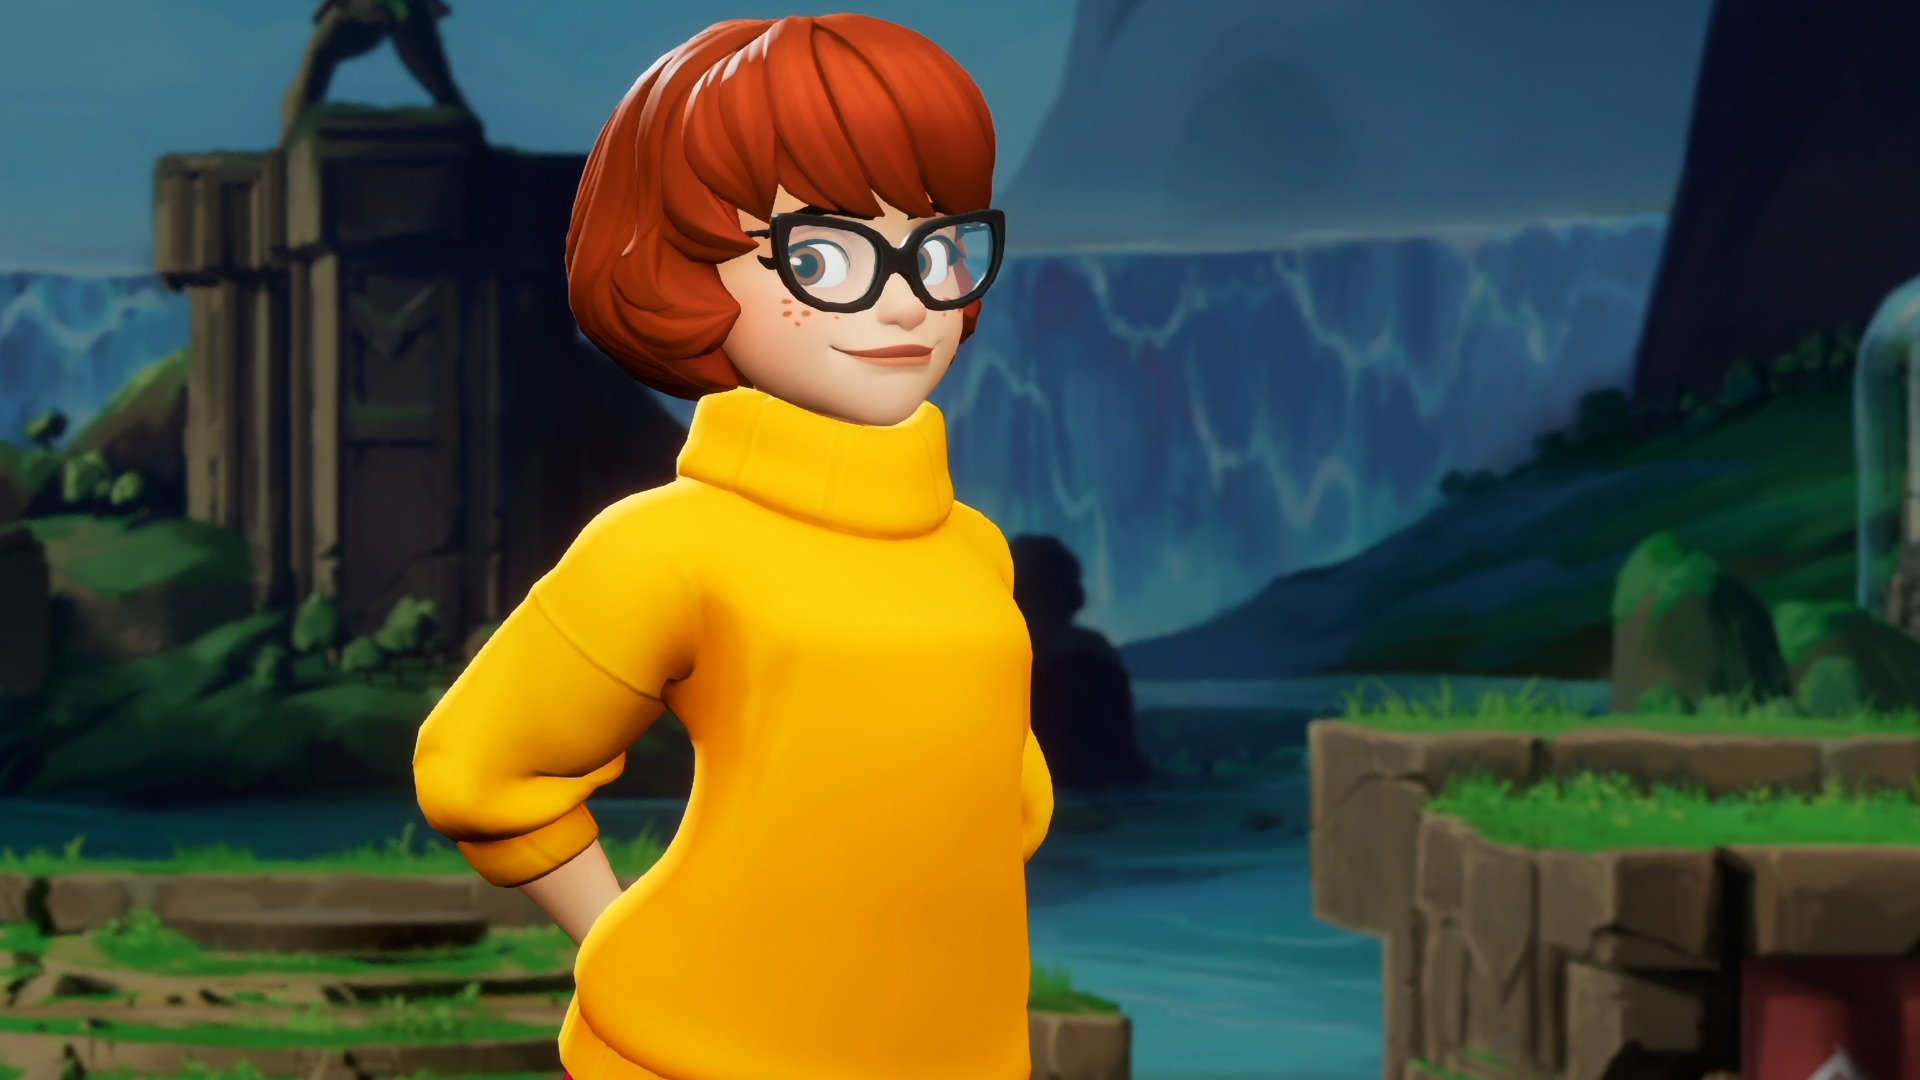 Velma' review: A bizarre take on 'Scooby Doo's brainiac